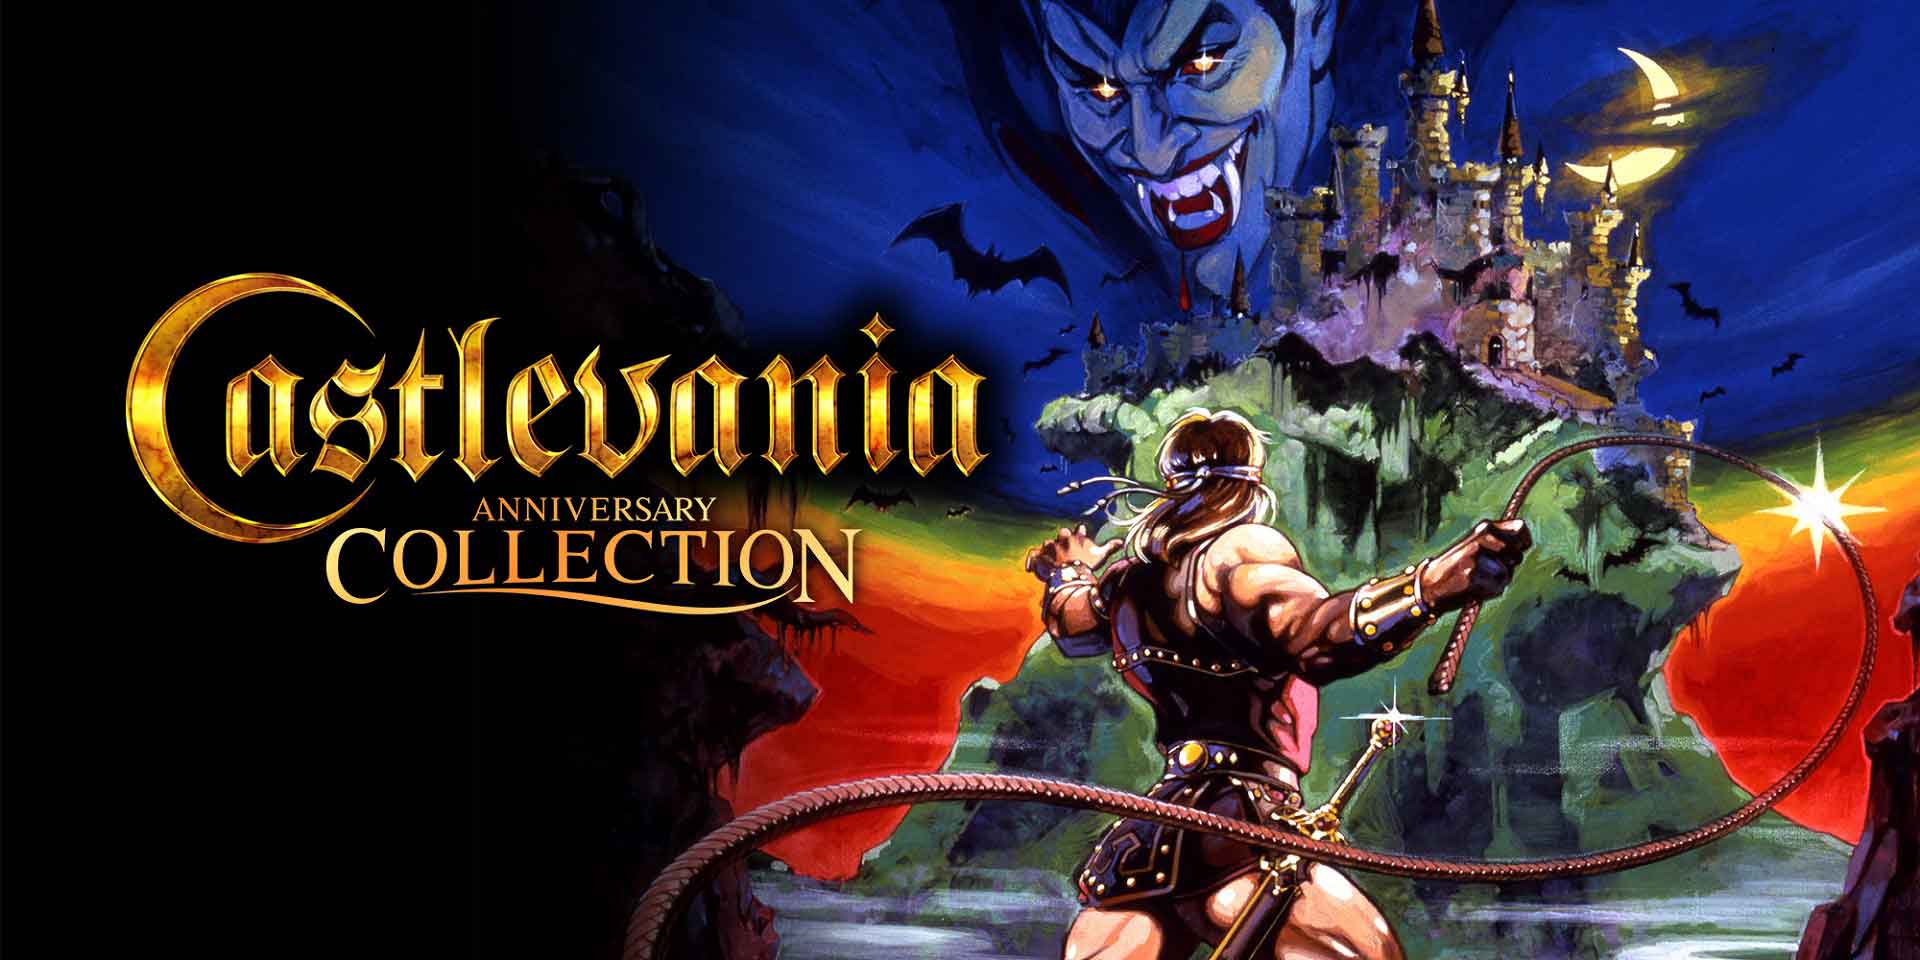 Limited Run veröffentlicht physische Version der Castlevania Anniversary Collection